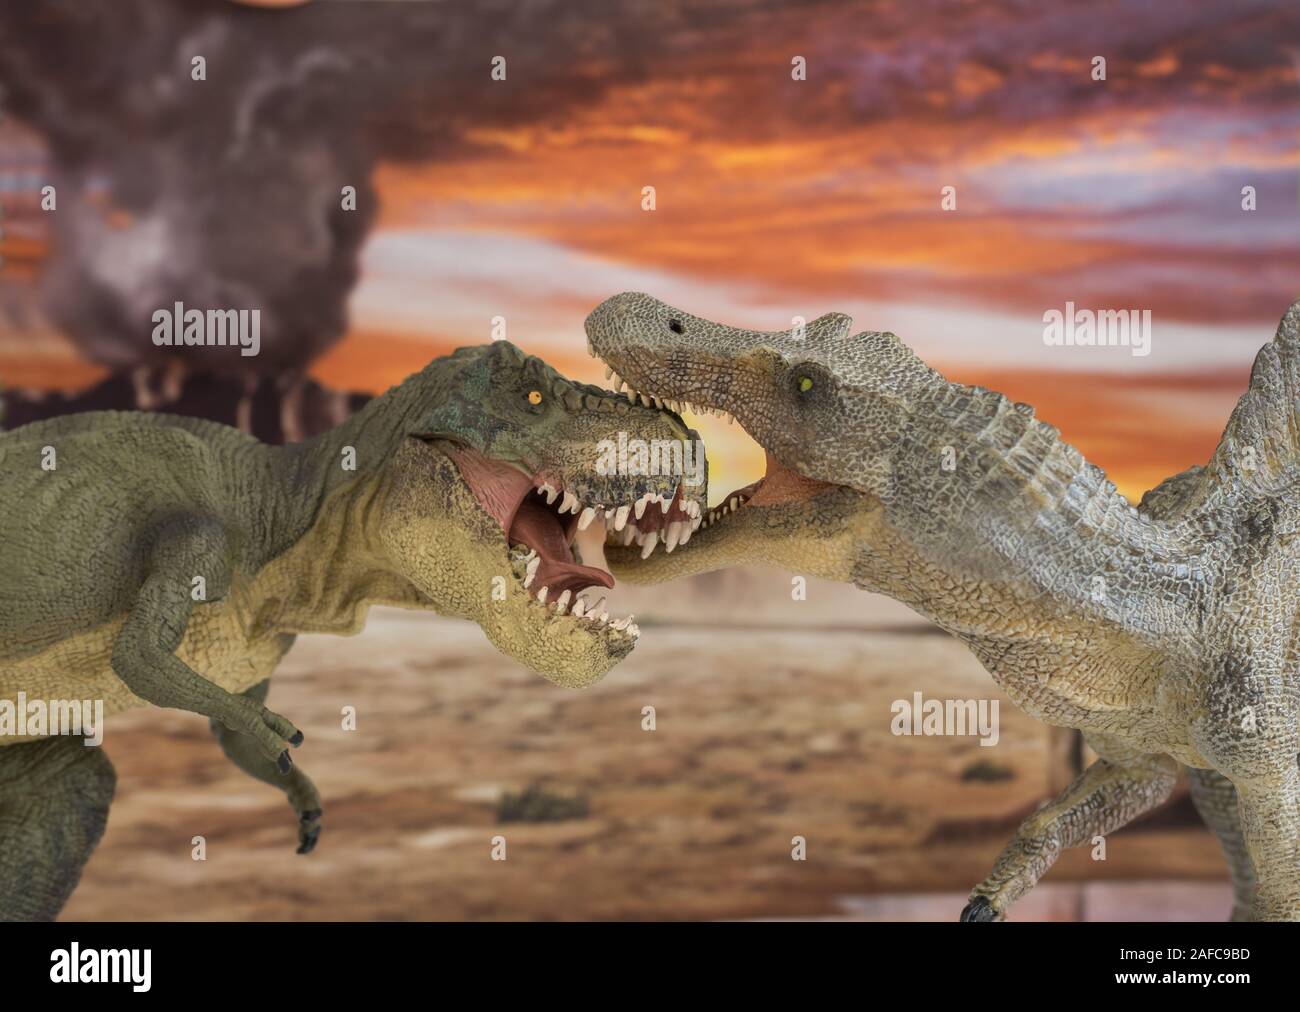 jurassic park toys spinosaurus vs trex